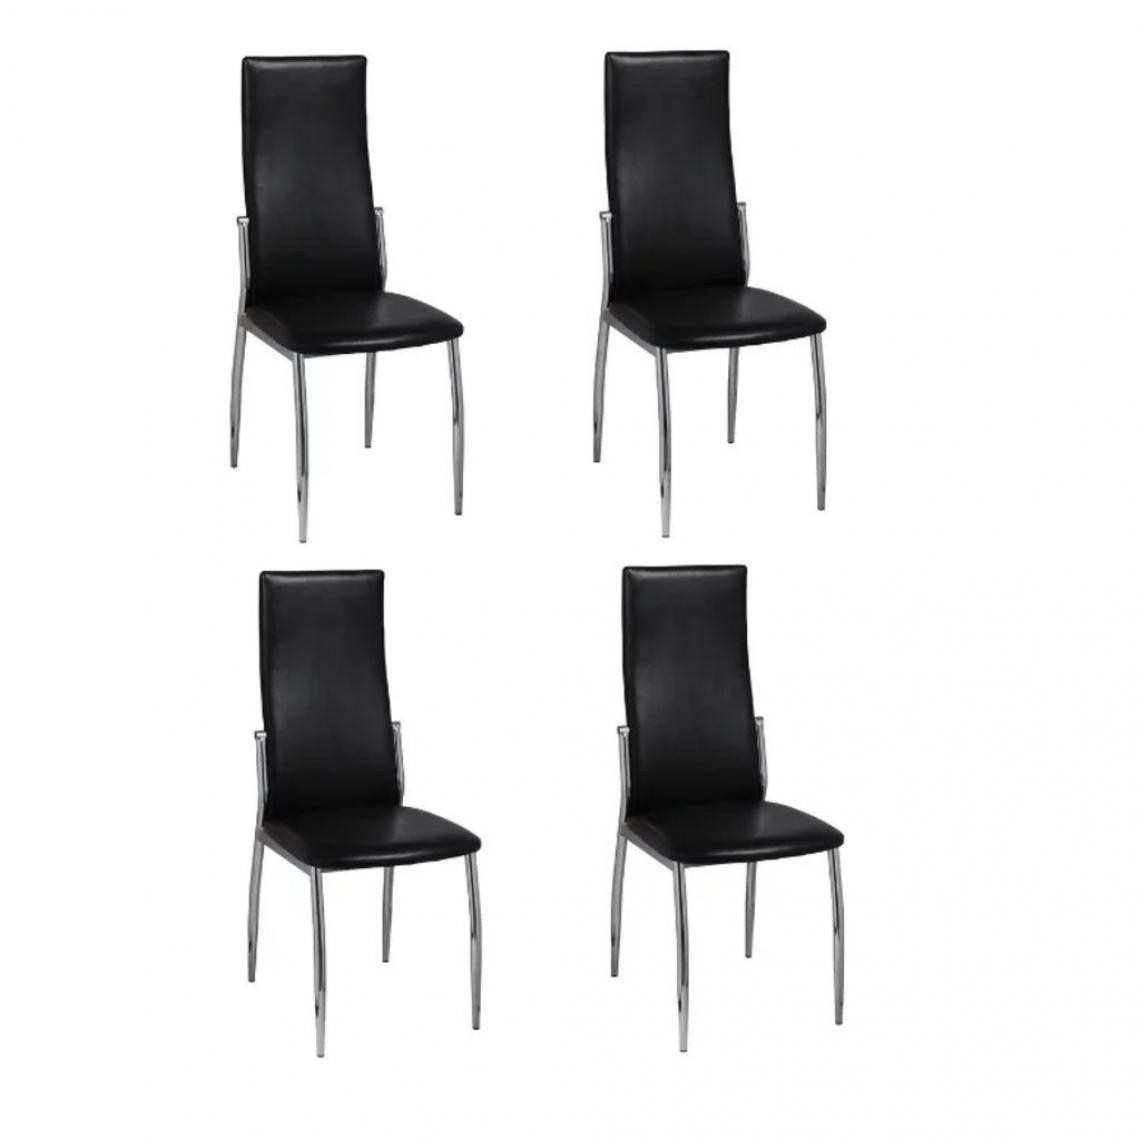 Decoshop26 - Lot de 4 chaises de salle à manger cuisine design ergonomique similicuir noir CDS021827 - Chaises